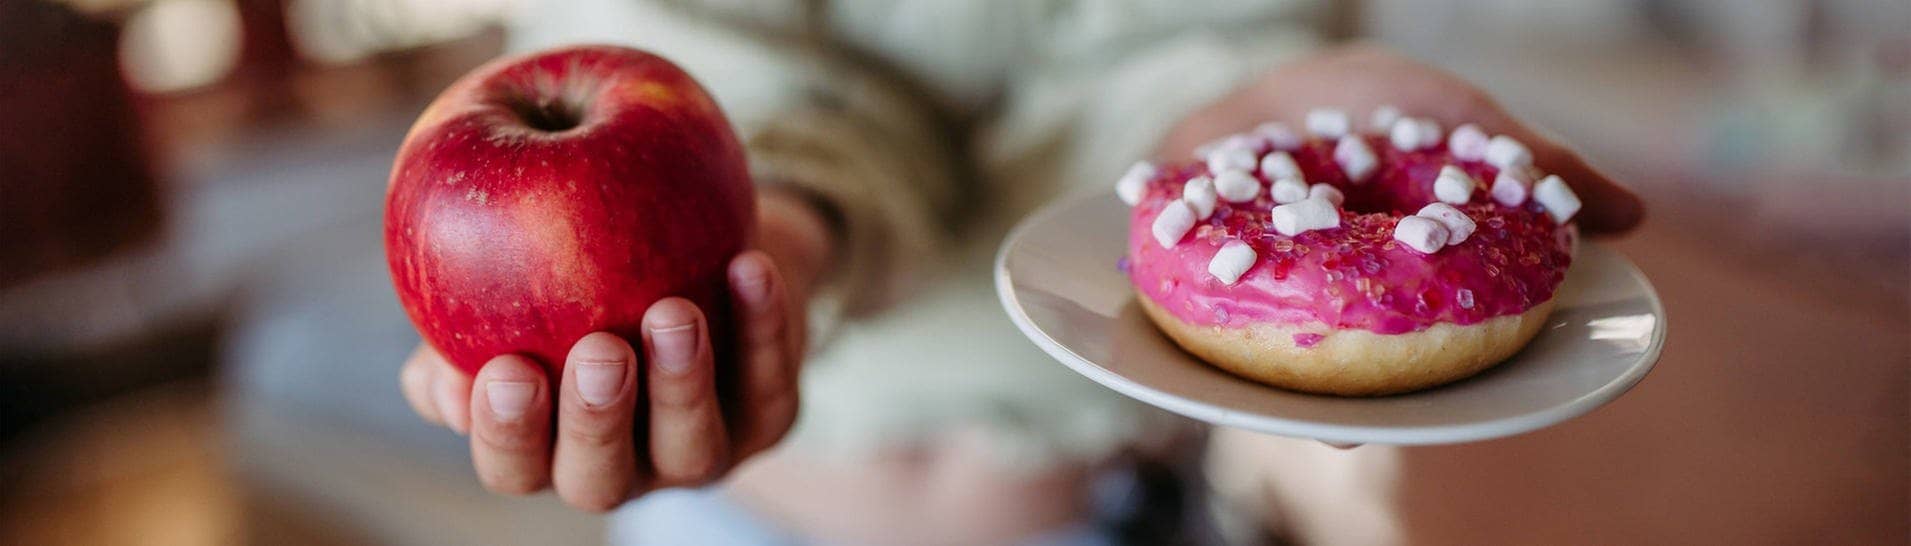 Frau hält einen Apfel und eine Donut. Beide enthalten Zucker und werden den Glukosespiegel ansteigen lassen